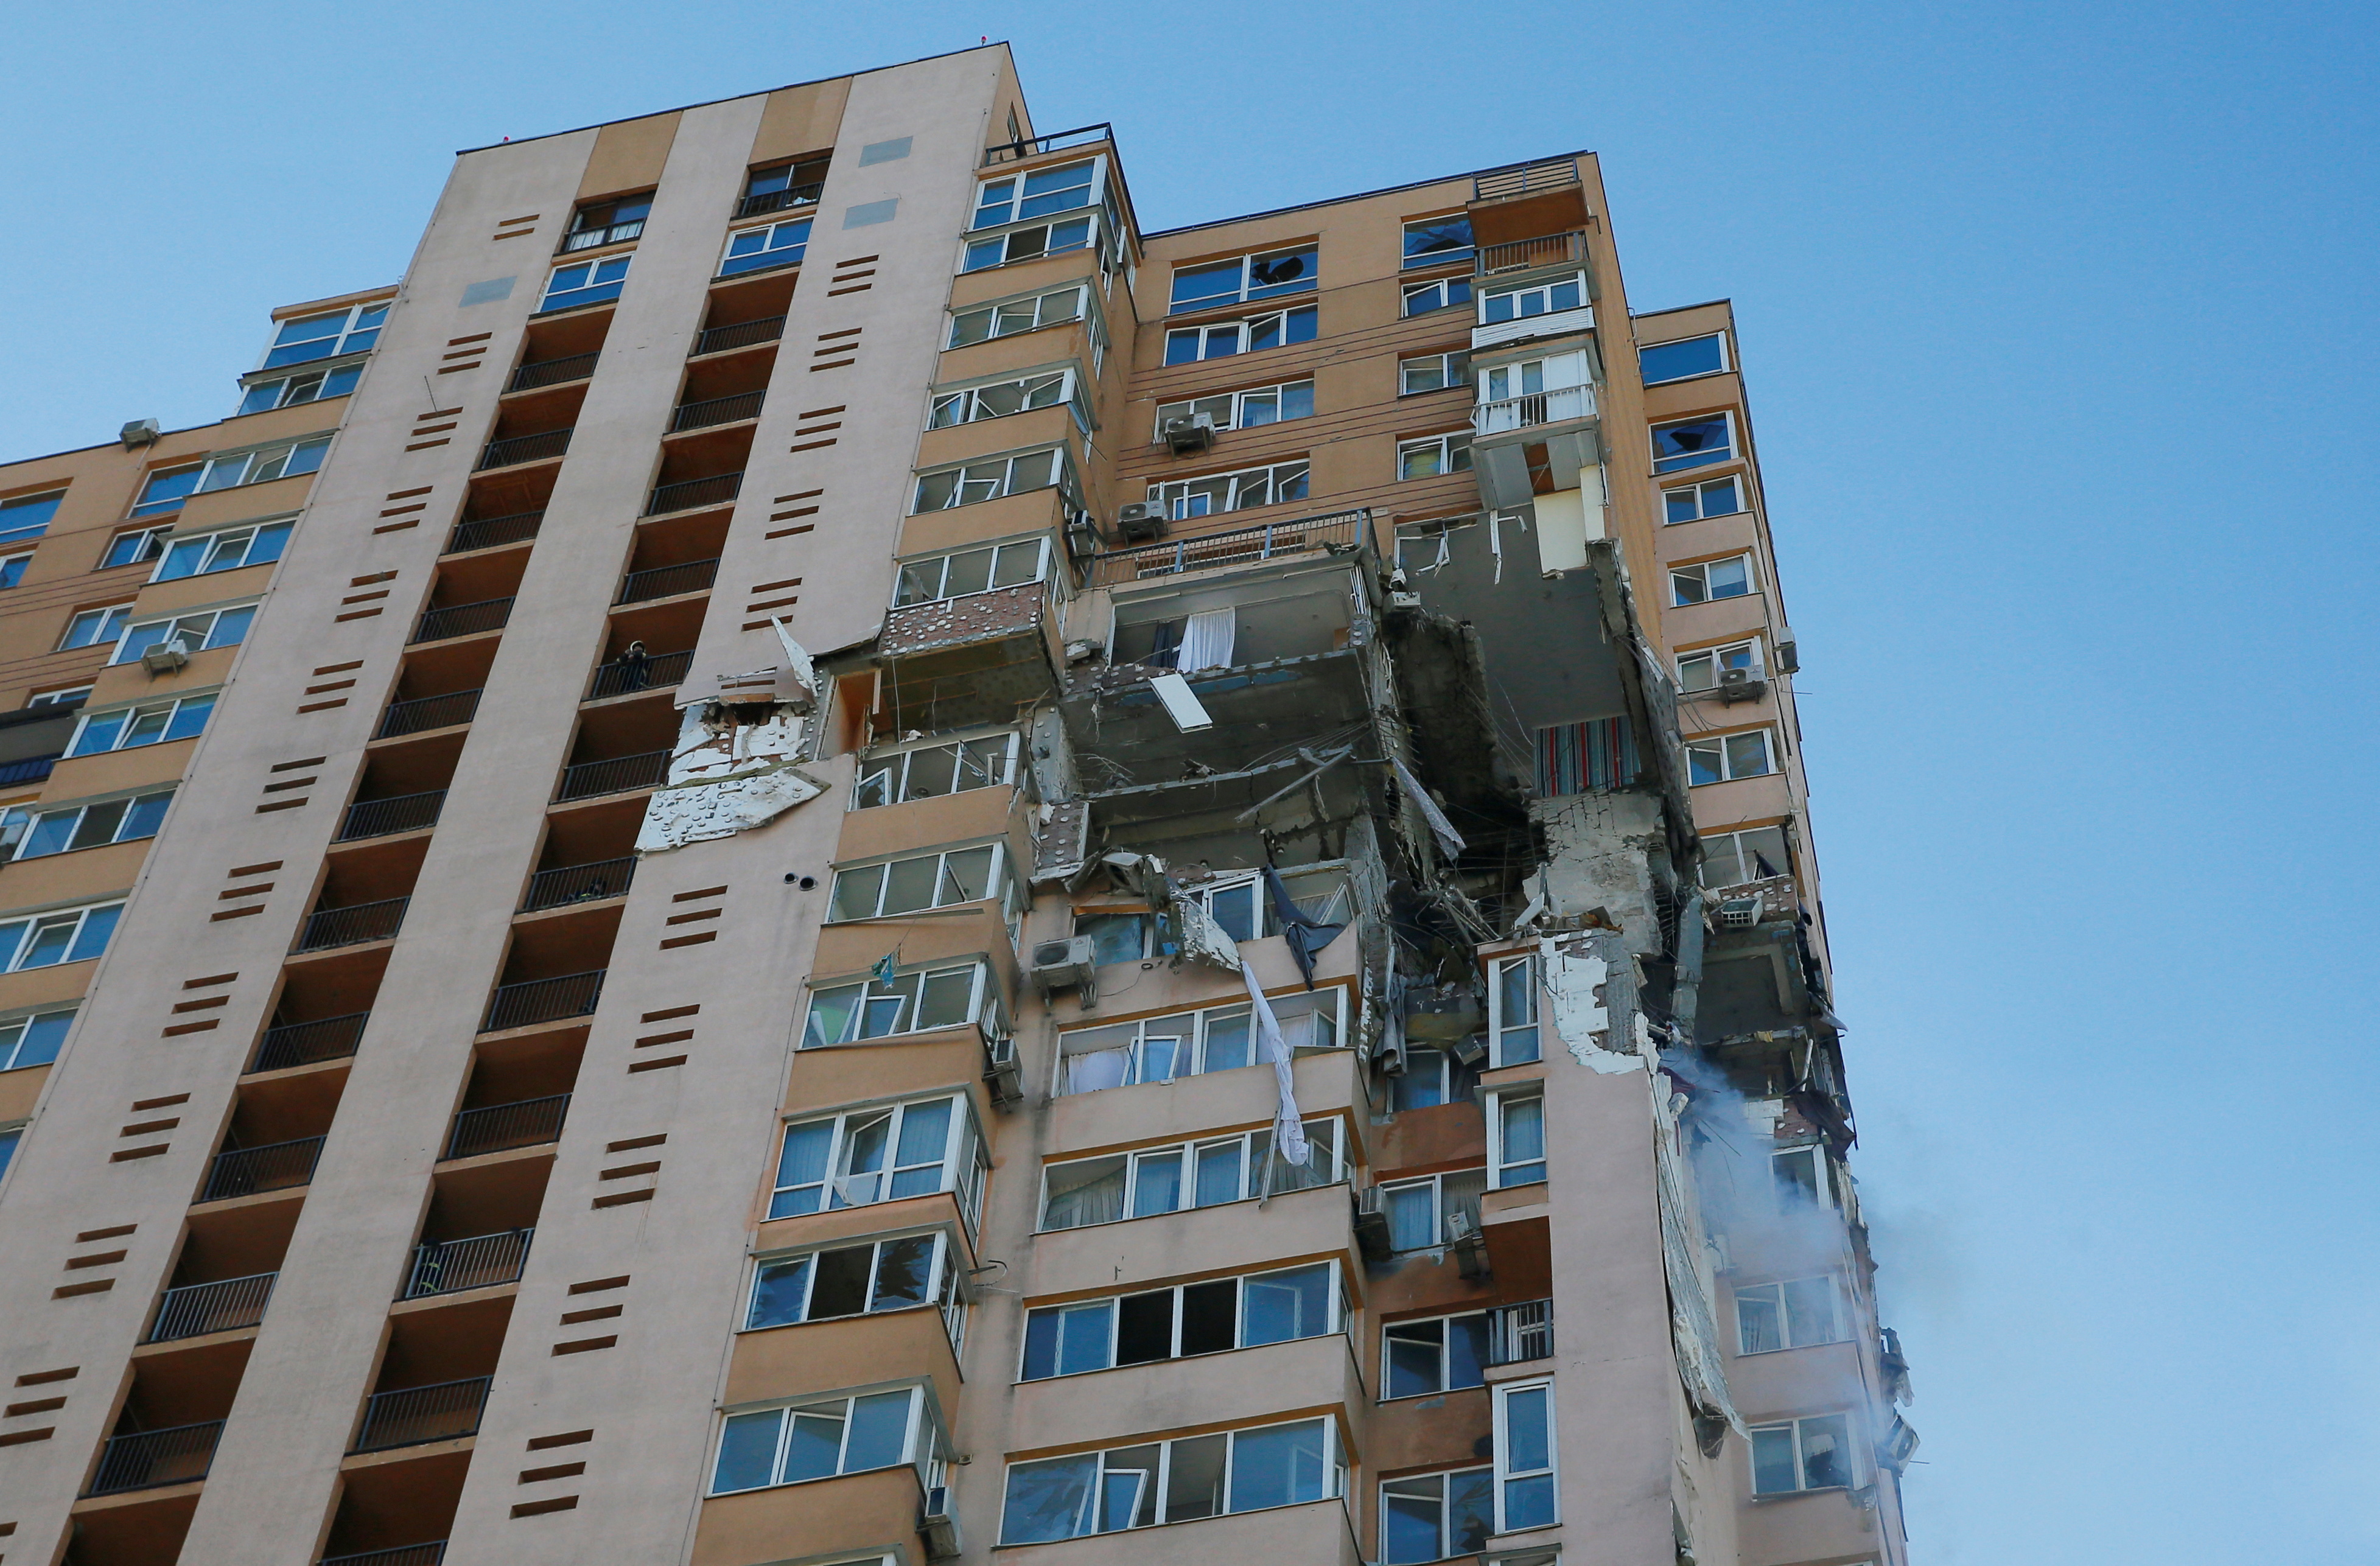 Dos pisos del edificio se vieron afectados (REUTERS/Gleb Garanich)